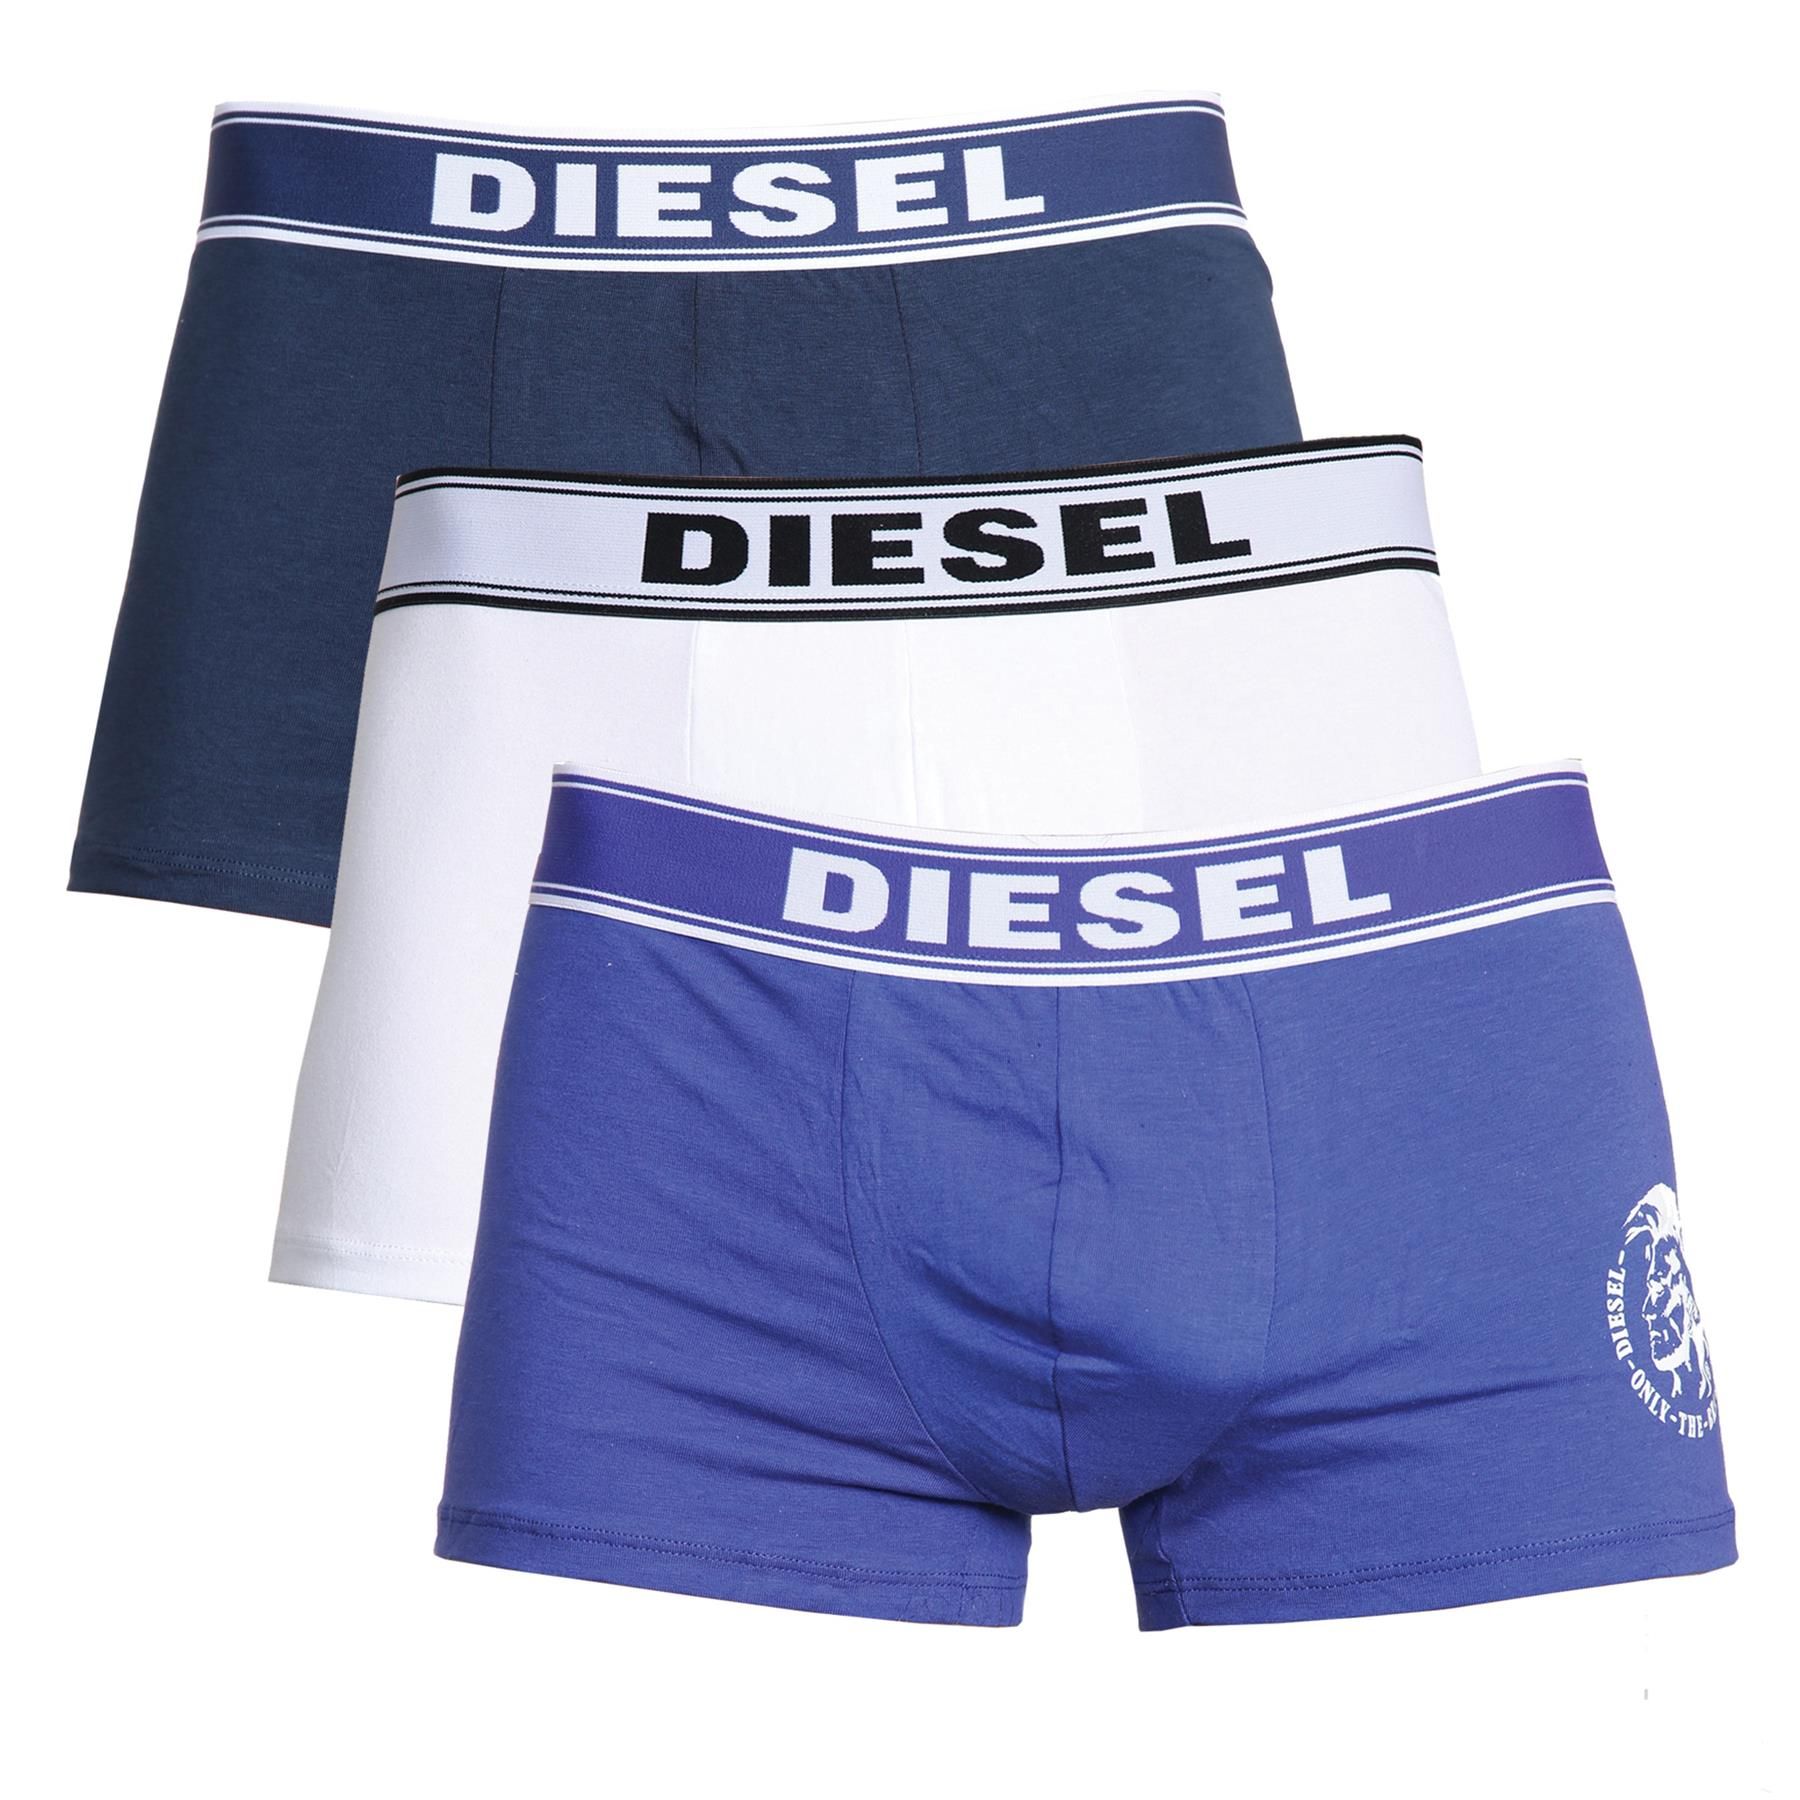 Diesel Mens Boxers 3 Pack